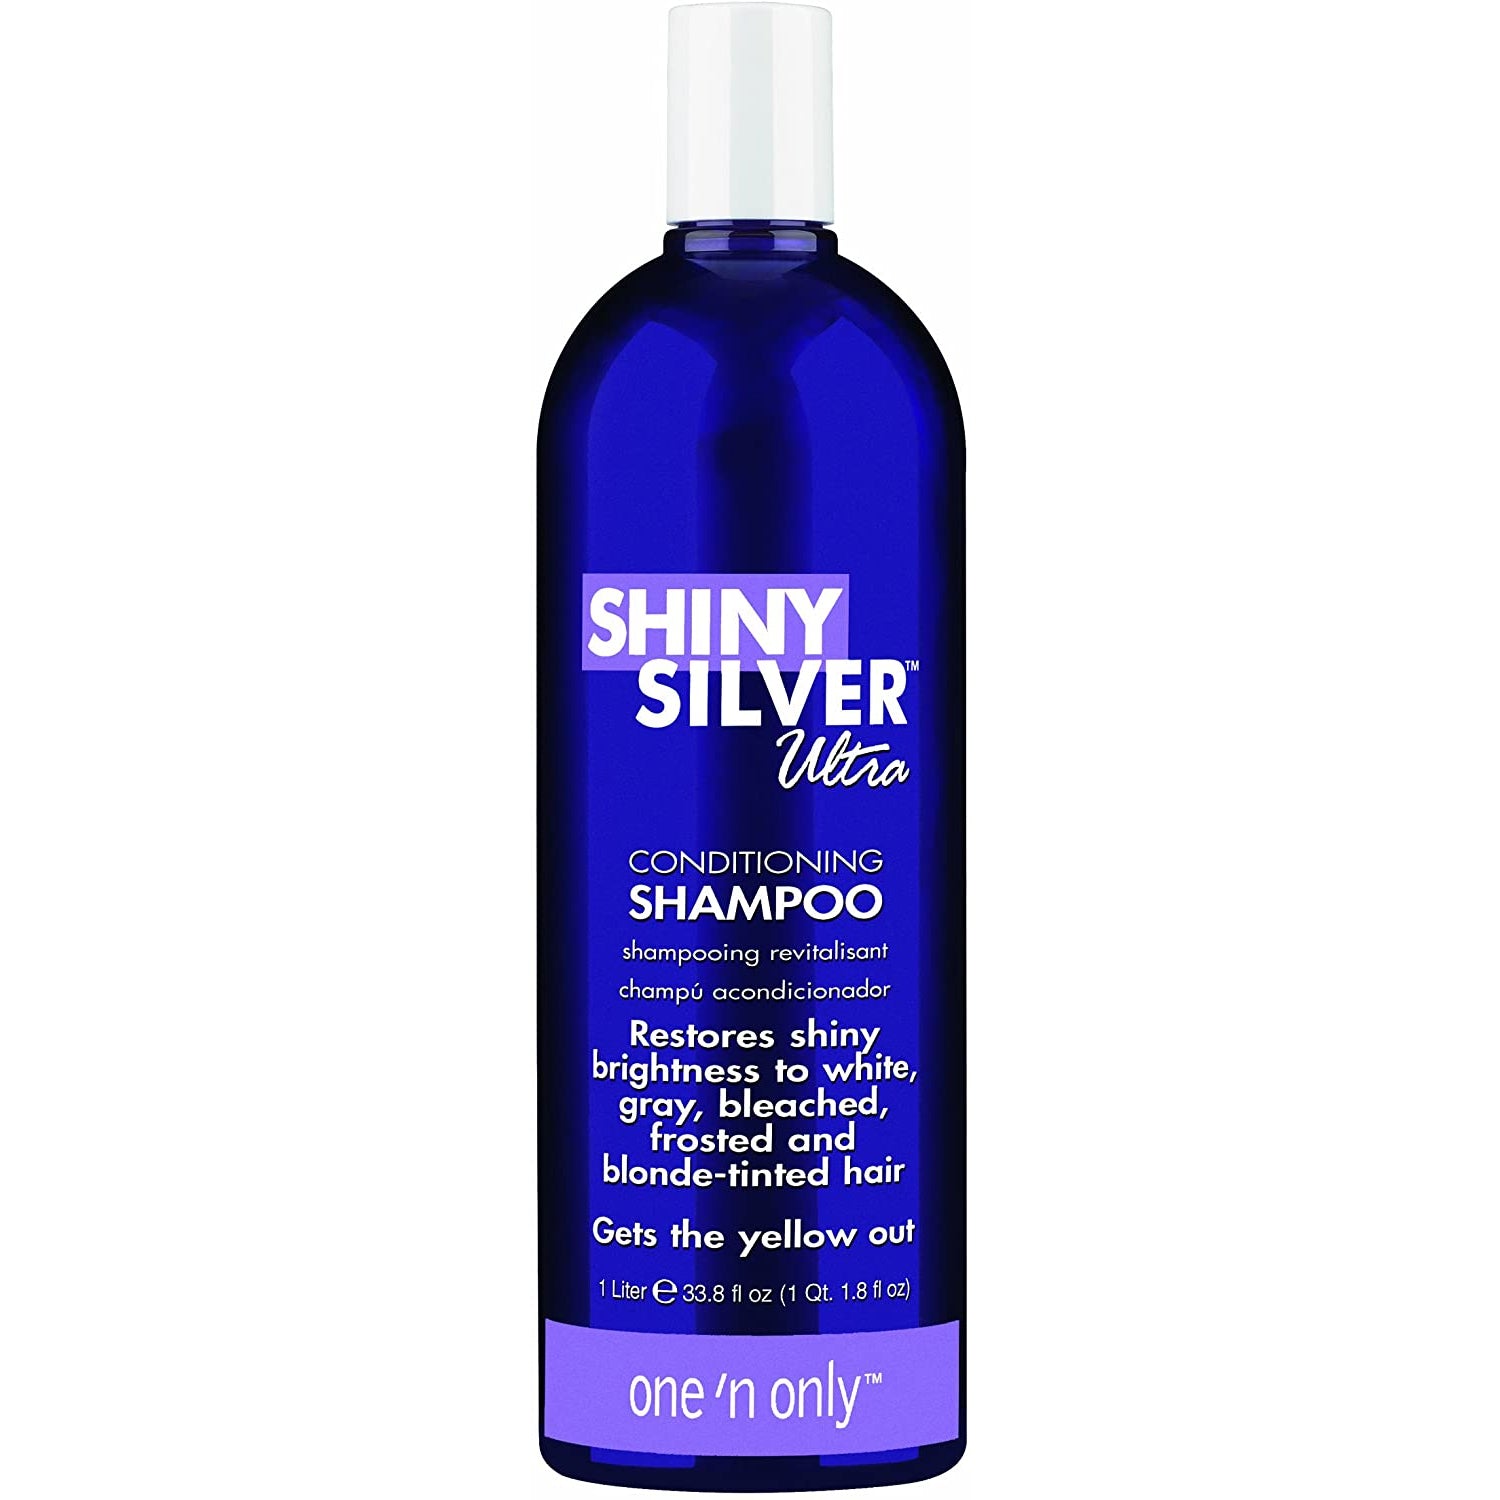 SHINY SILVER SHAMP 33.8 OZ